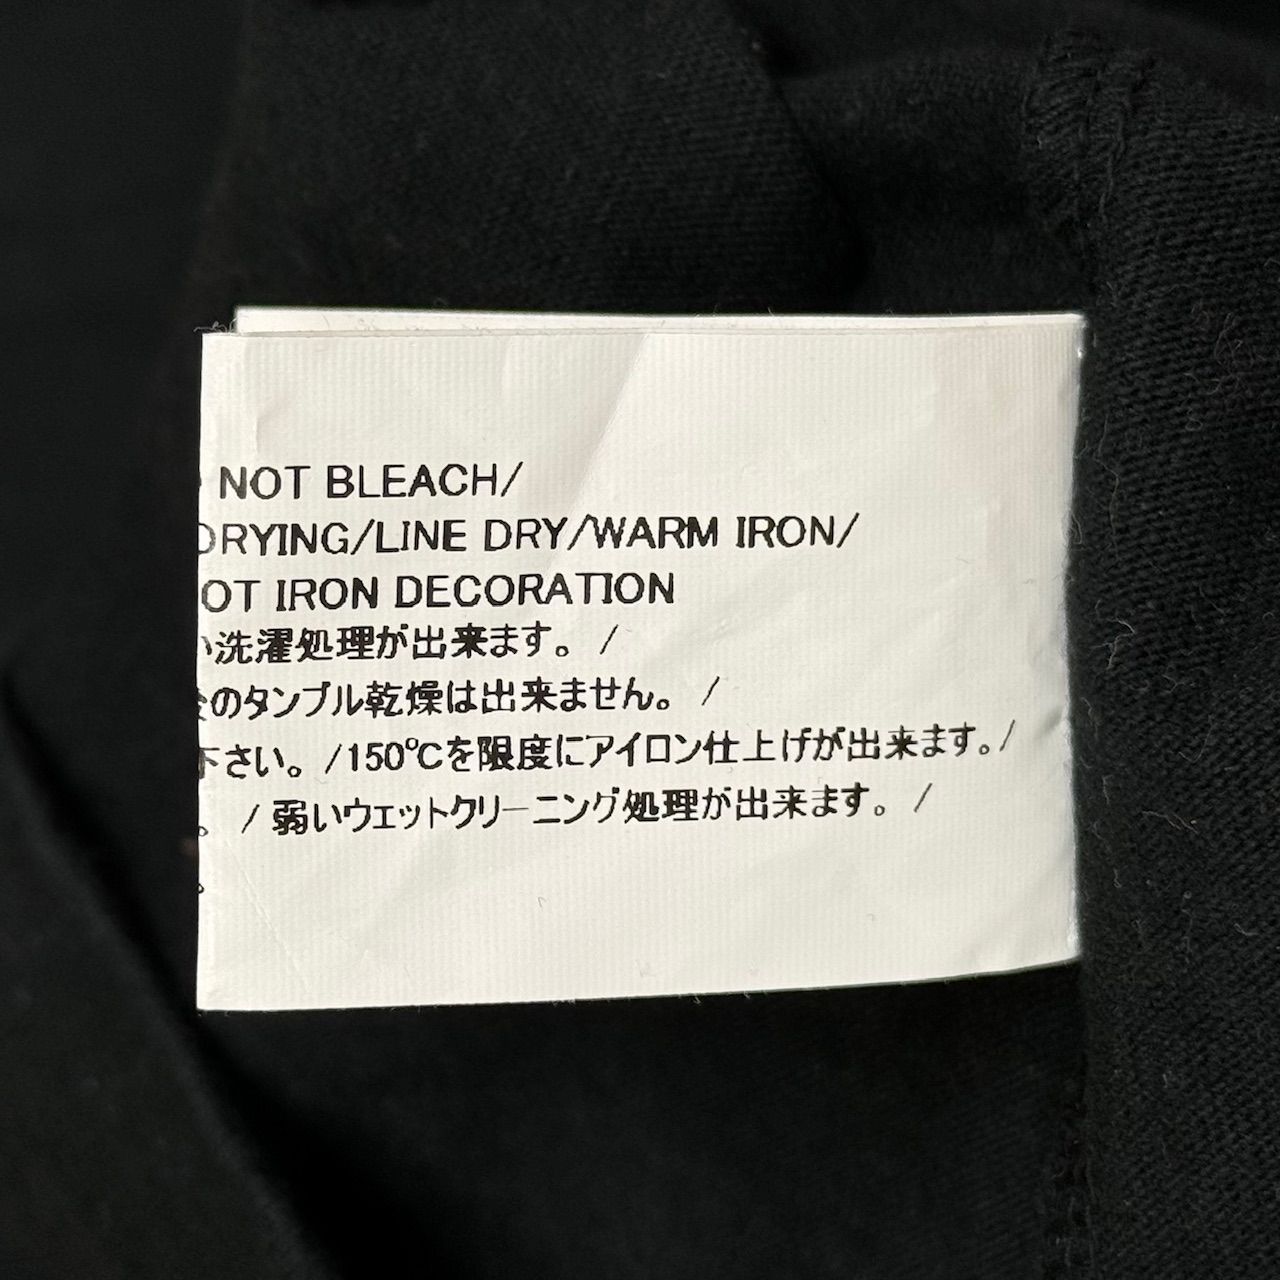 READYMADE × Psychworld コラボ ロゴプリント Tシャツ レディメイド サイコワールド  ブラック XL  62321A3